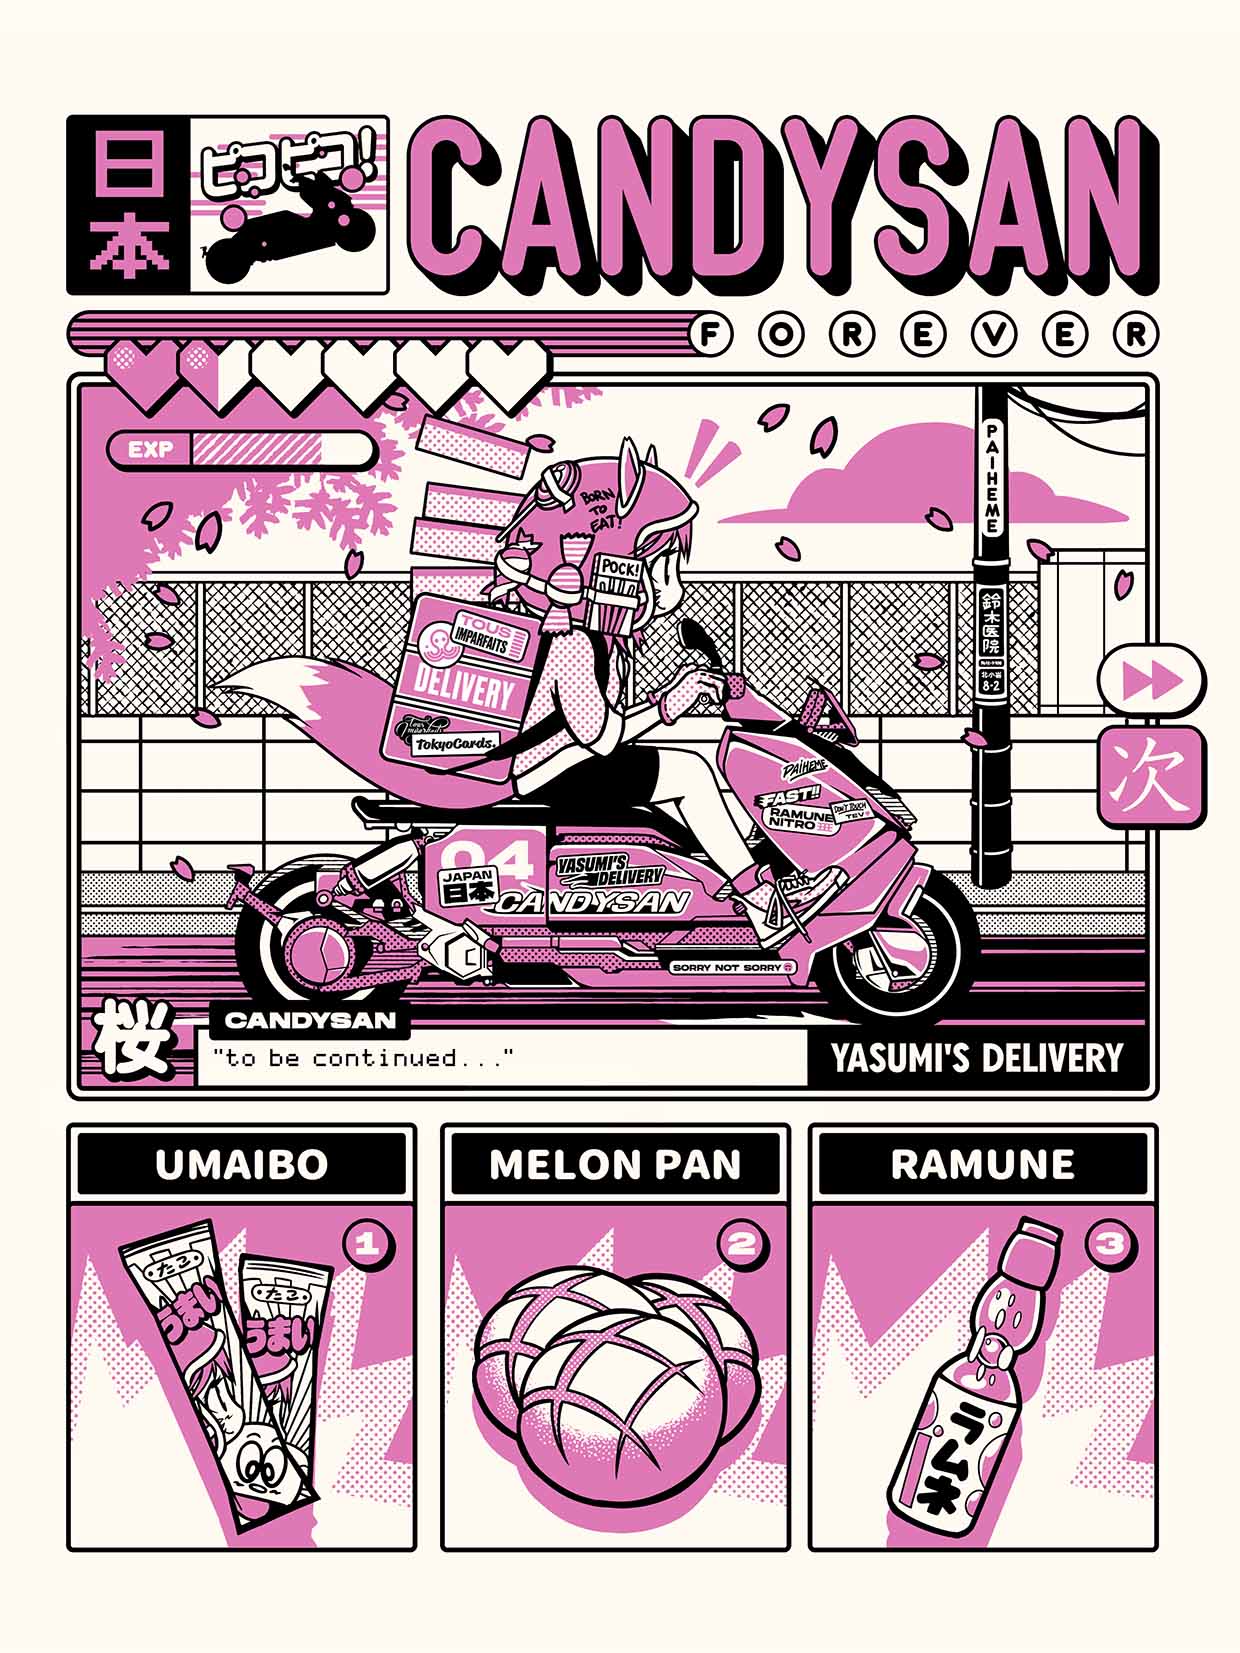 J'ai testé pour vous la CandysanBox d'Ici Japon!